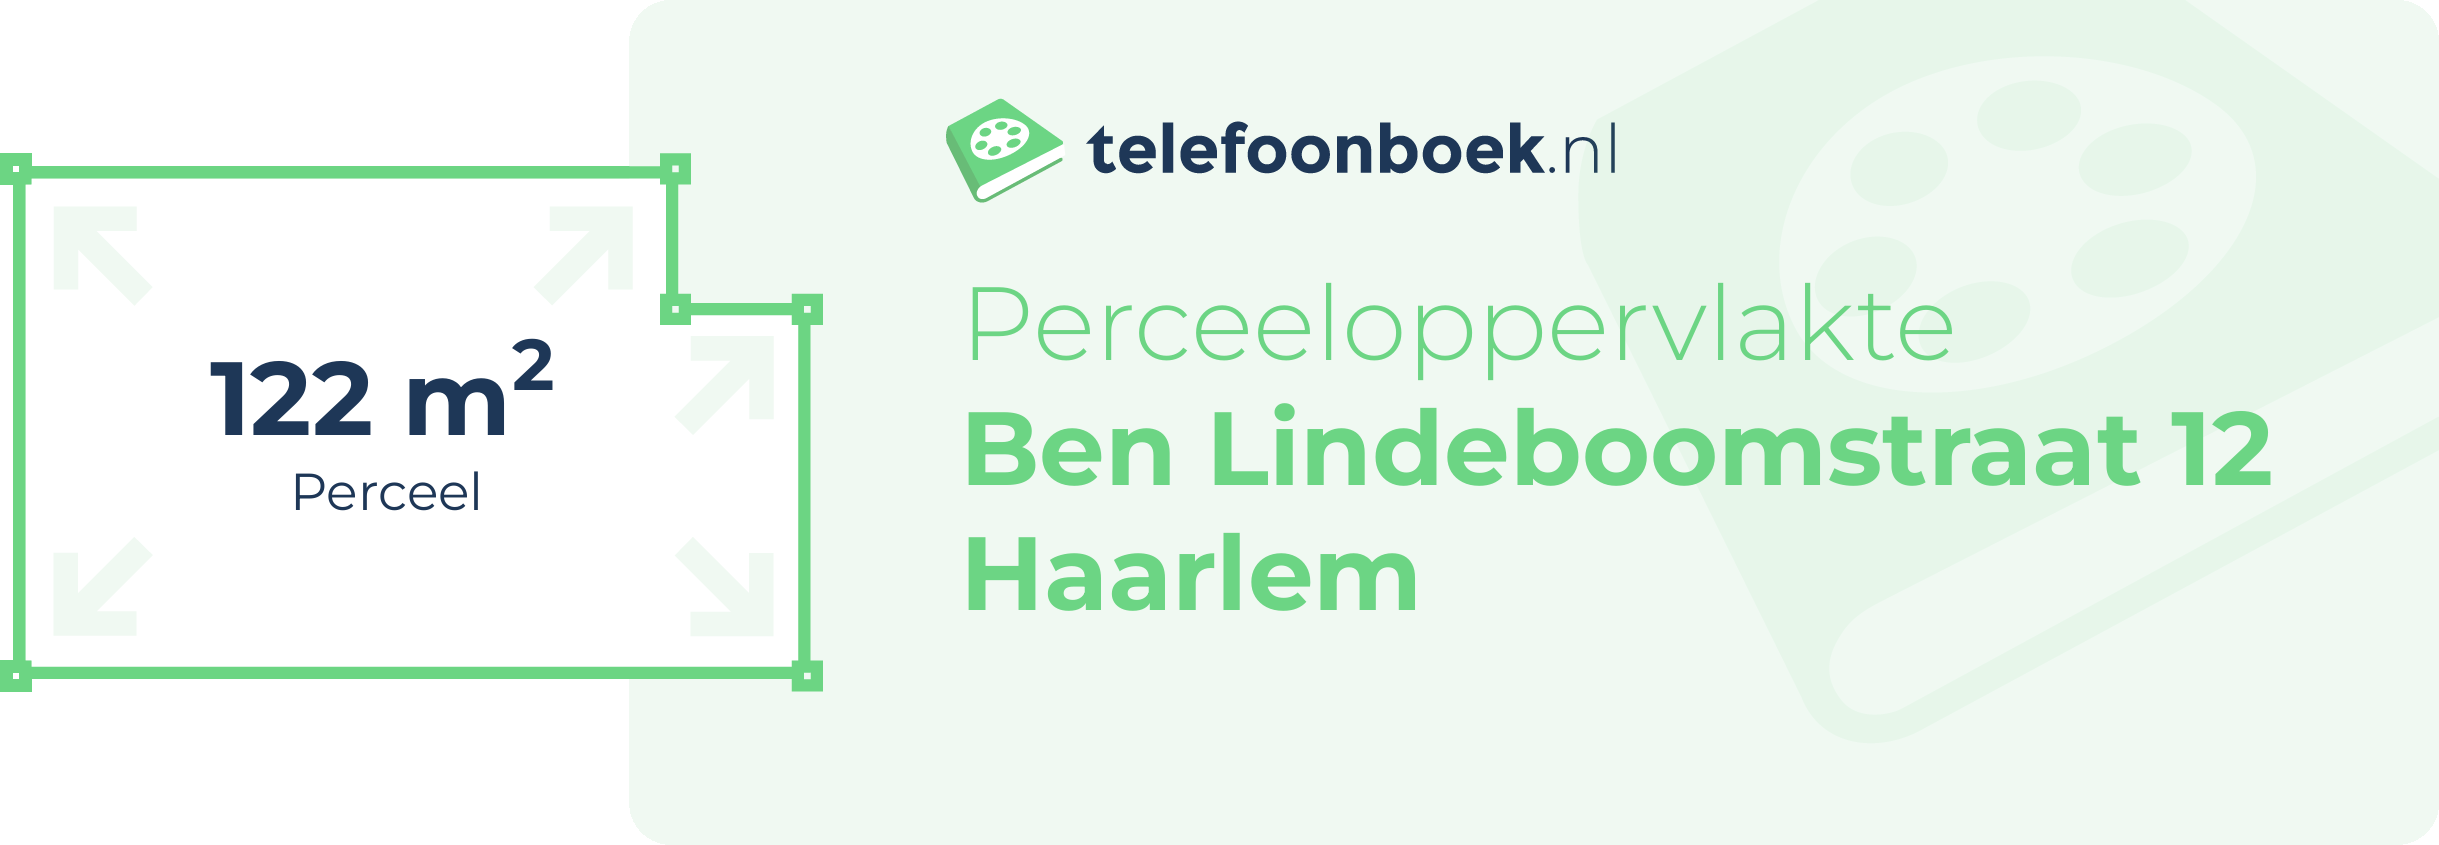 Perceeloppervlakte Ben Lindeboomstraat 12 Haarlem